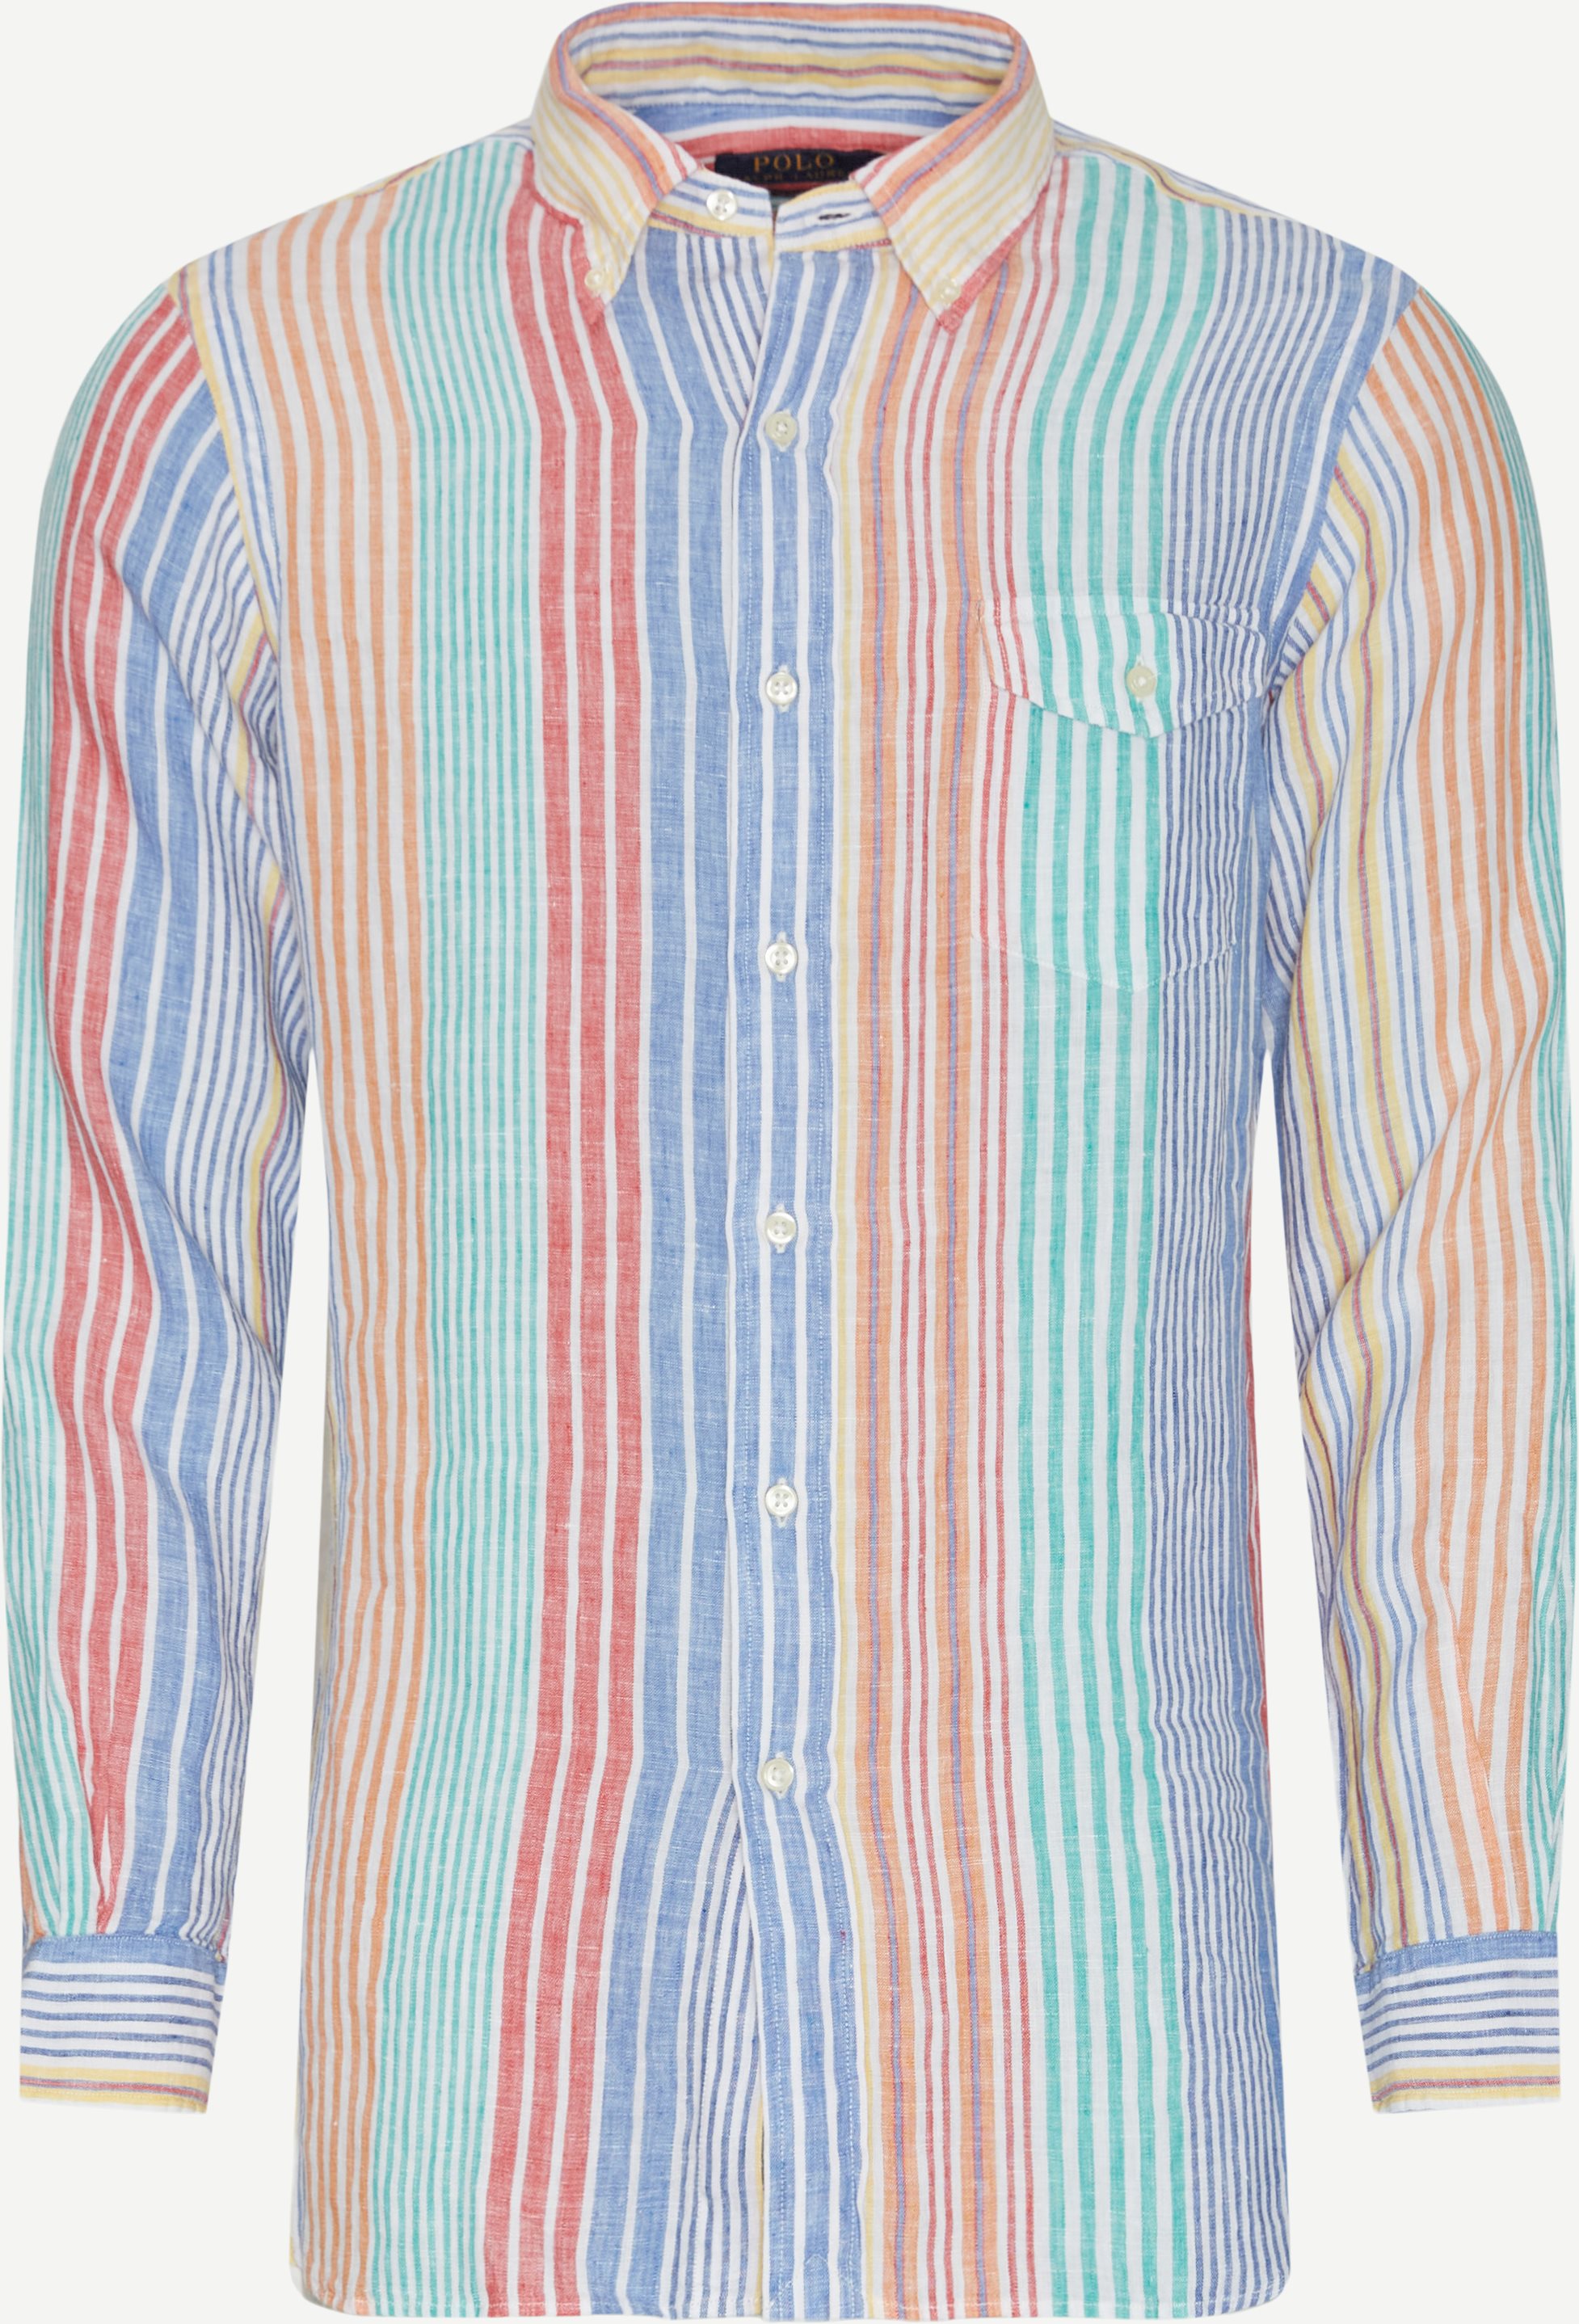 Polo Ralph Lauren Skjorter 710867332 Blå